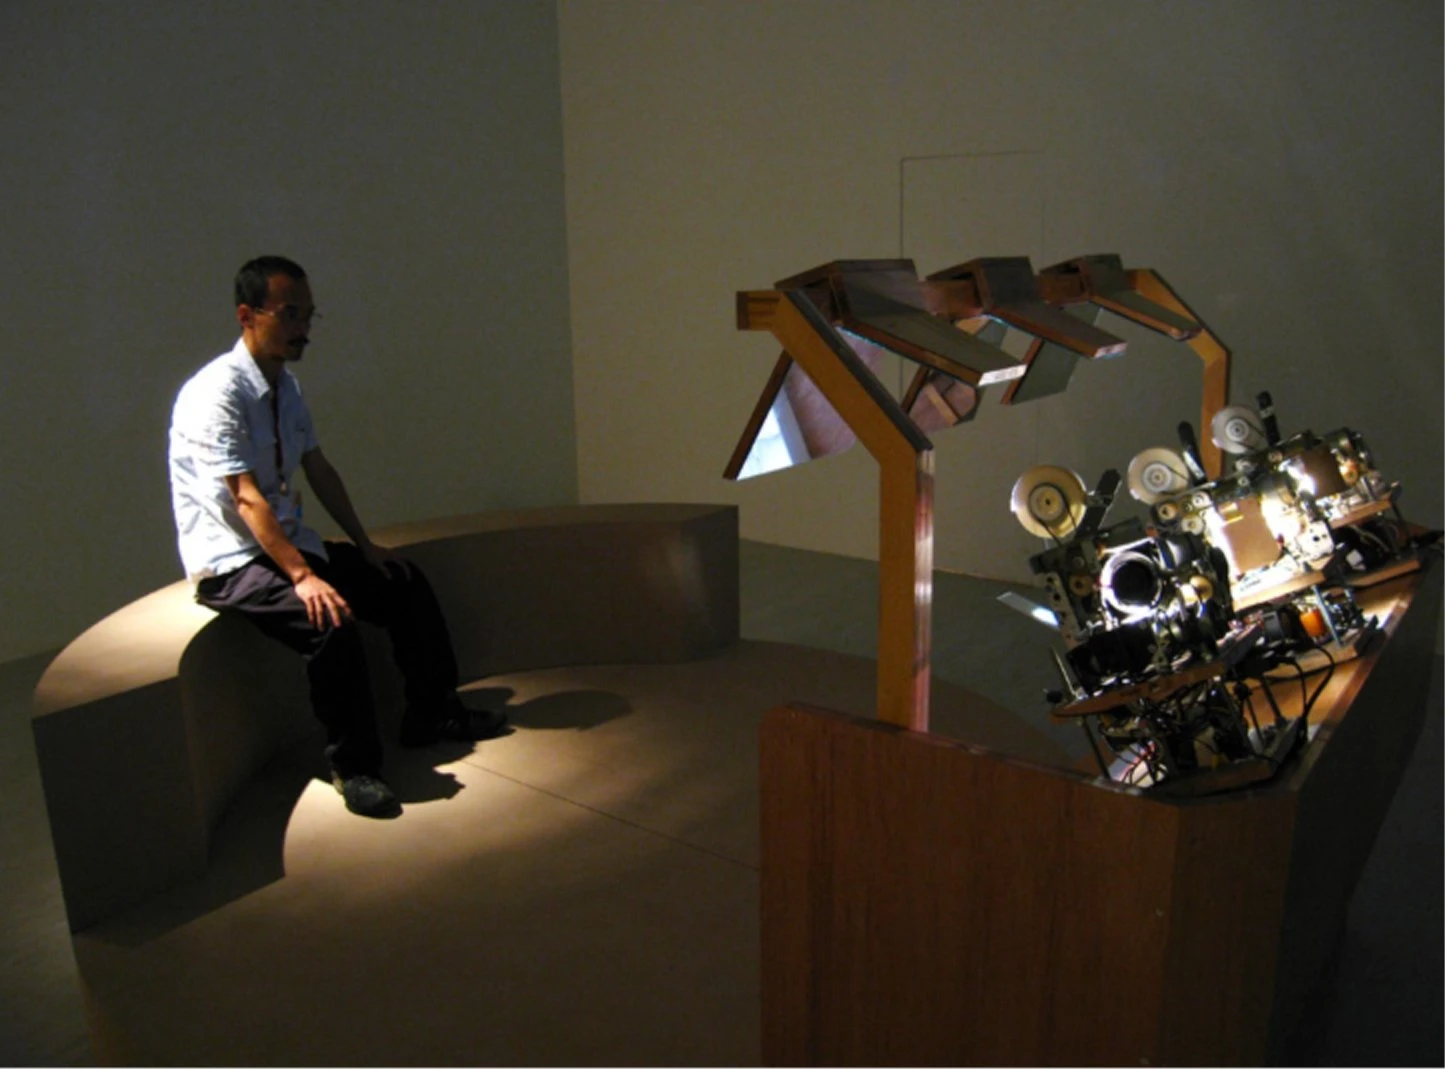 《明箱電影院（三螢幕）之路漫漫》，1996−2008，參展王嘉驥策展「家：2008台灣美術雙年展」於國美館展出一景-圖片